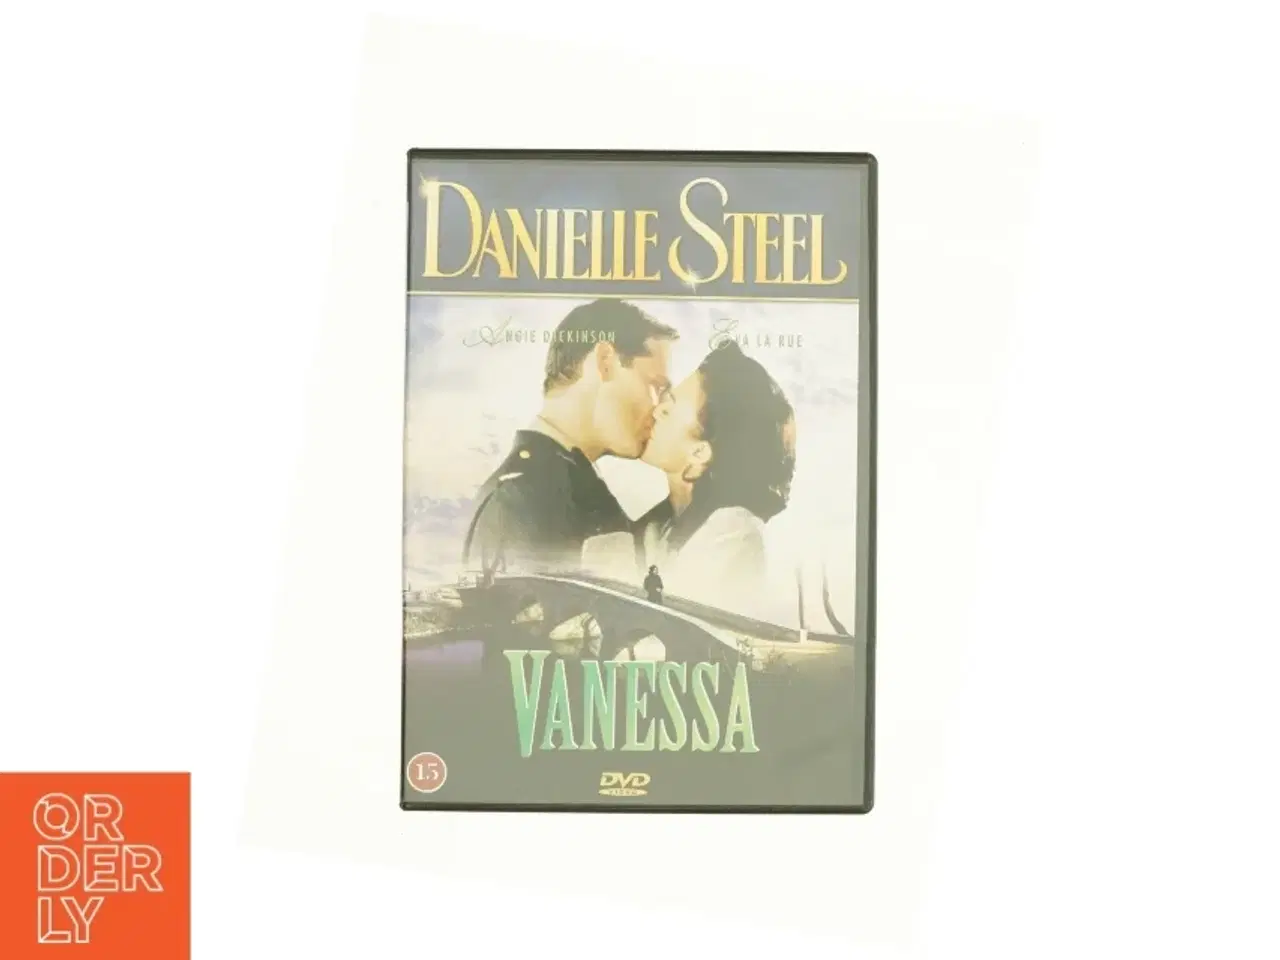 Billede 1 - "Danielle Steel" fra DVD